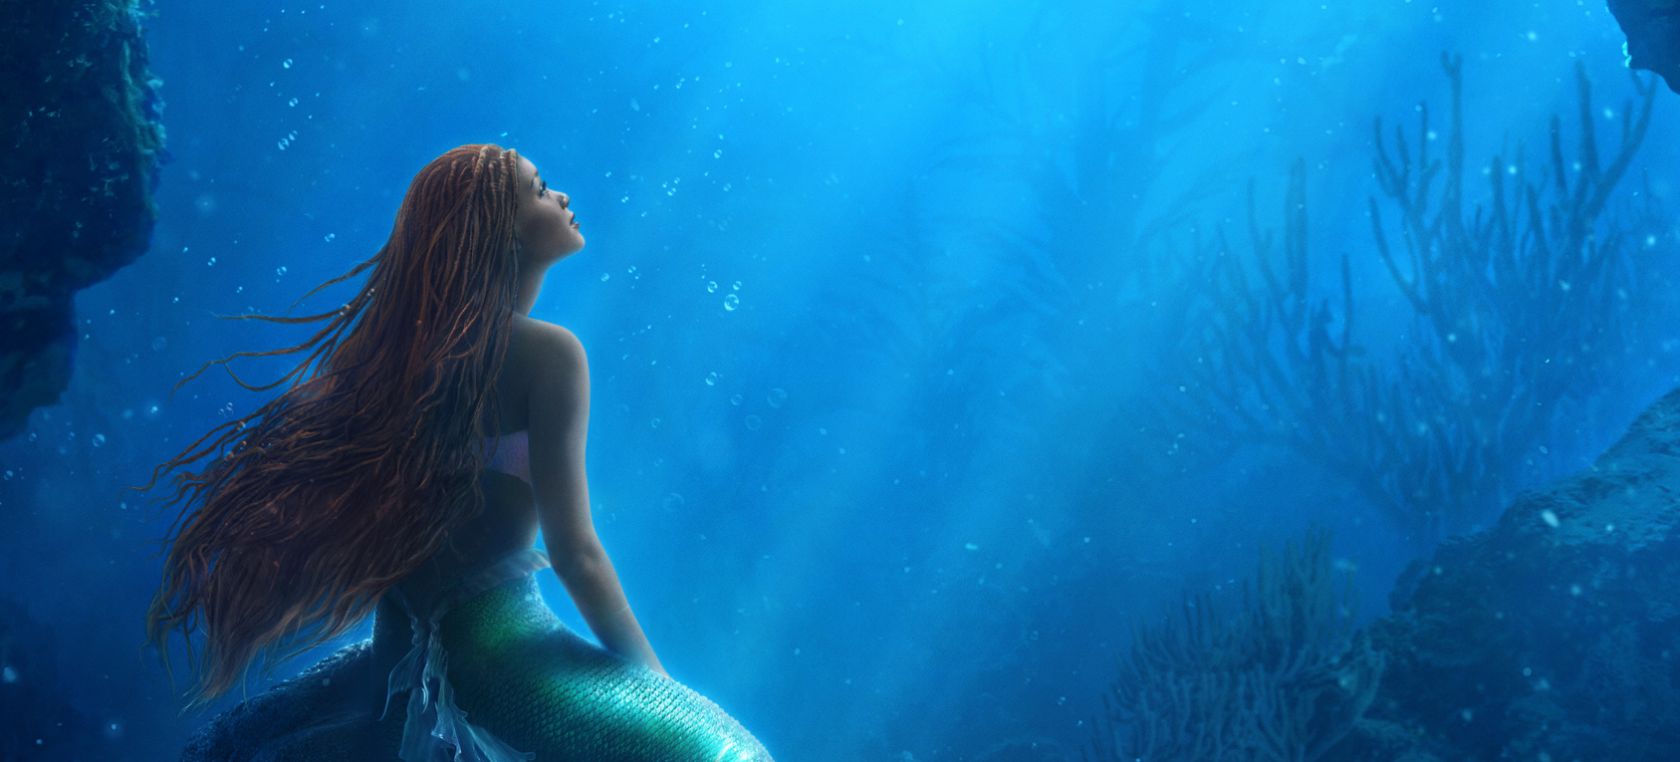 Ariel ya canta en castellano en el teaser de ‘La Sirenita’: Así suena ‘Parte de él’